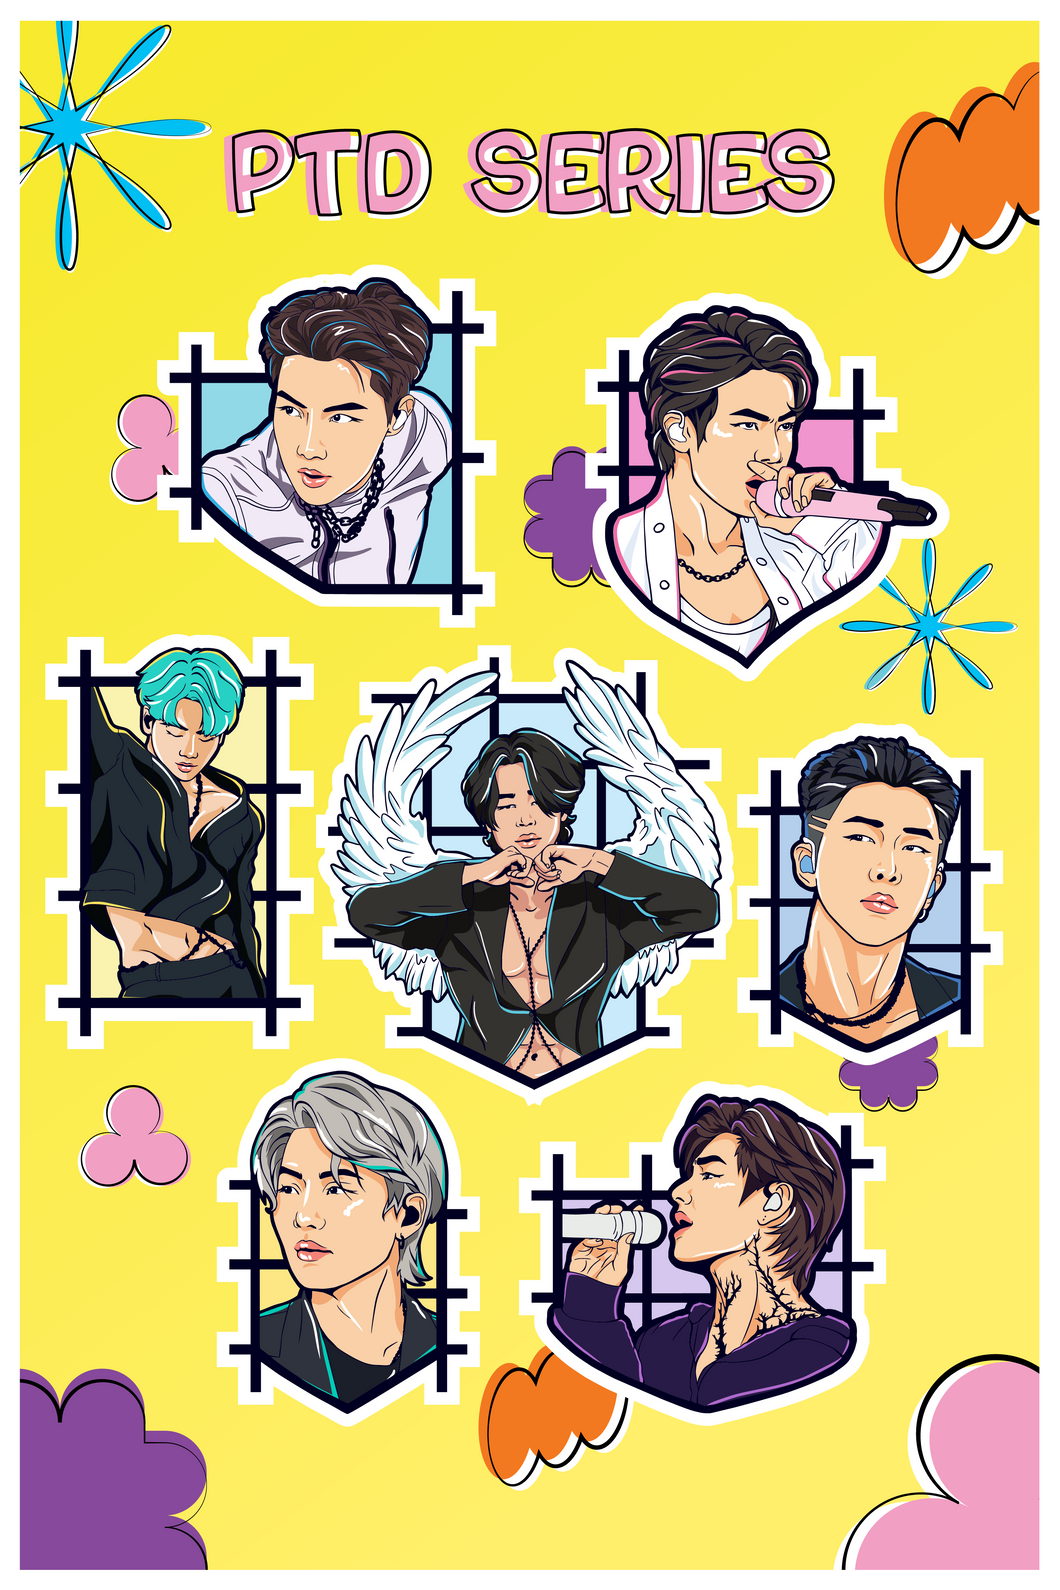 BTS PTD Series Sticker Sheet!